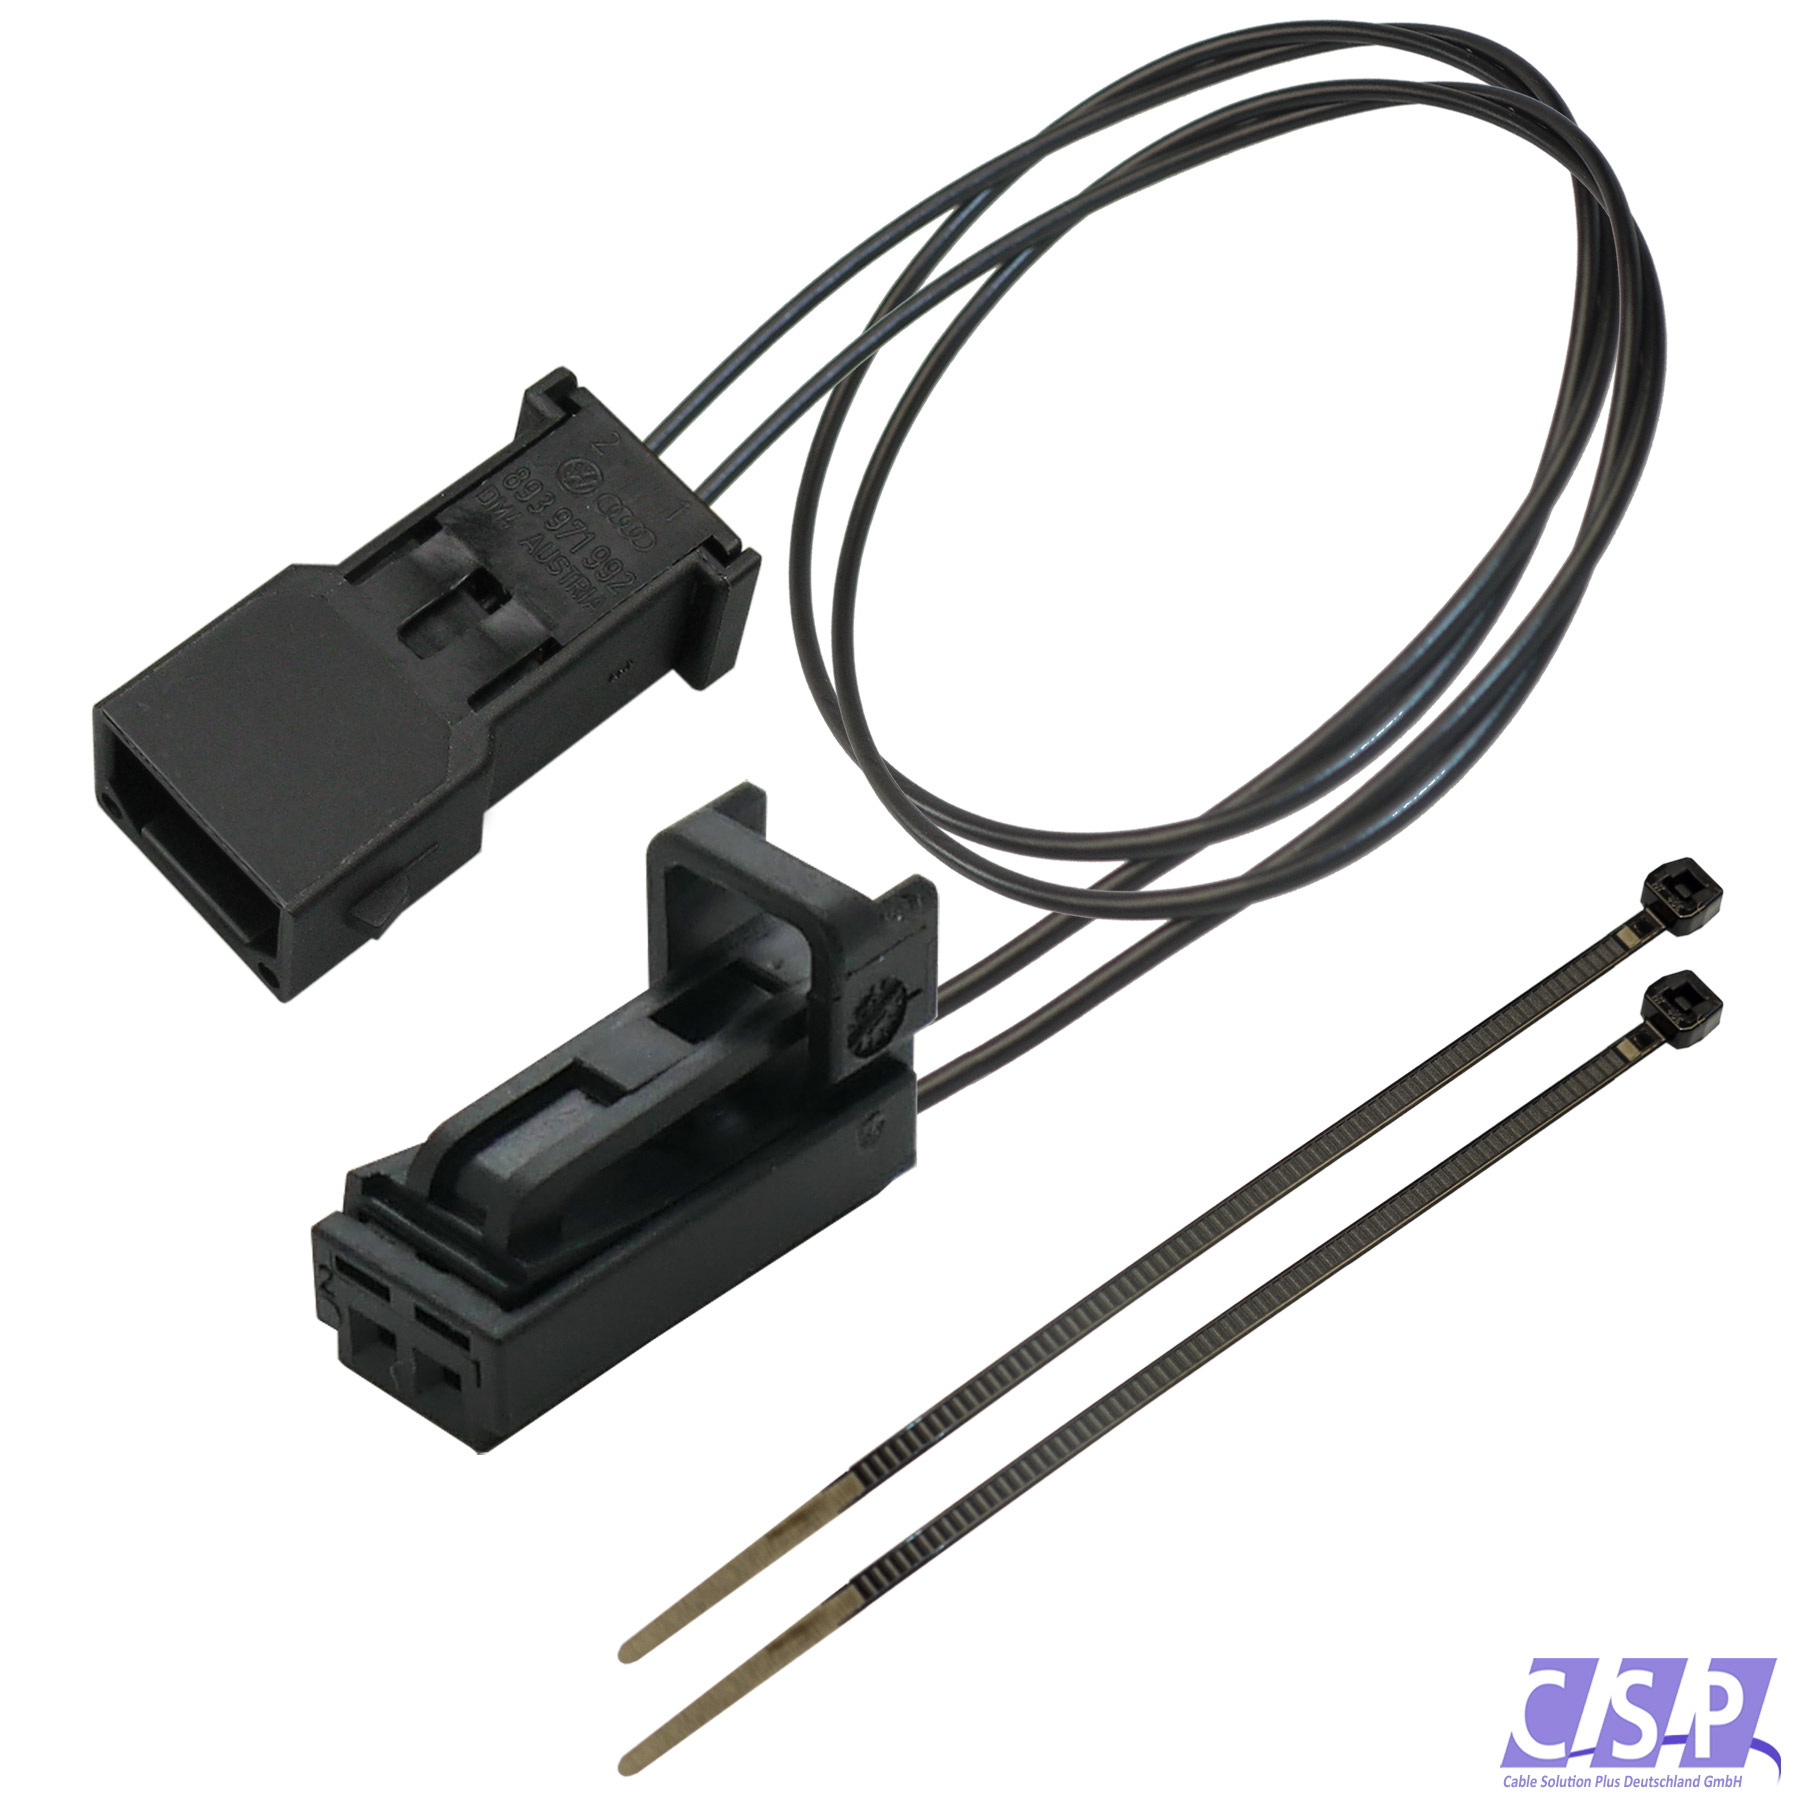 https://www.autoelektrik24.de/images/product_images/original_images/Kabel-Kabelsatz-Adapter-LED-In_33-1573_1687_0.jpg